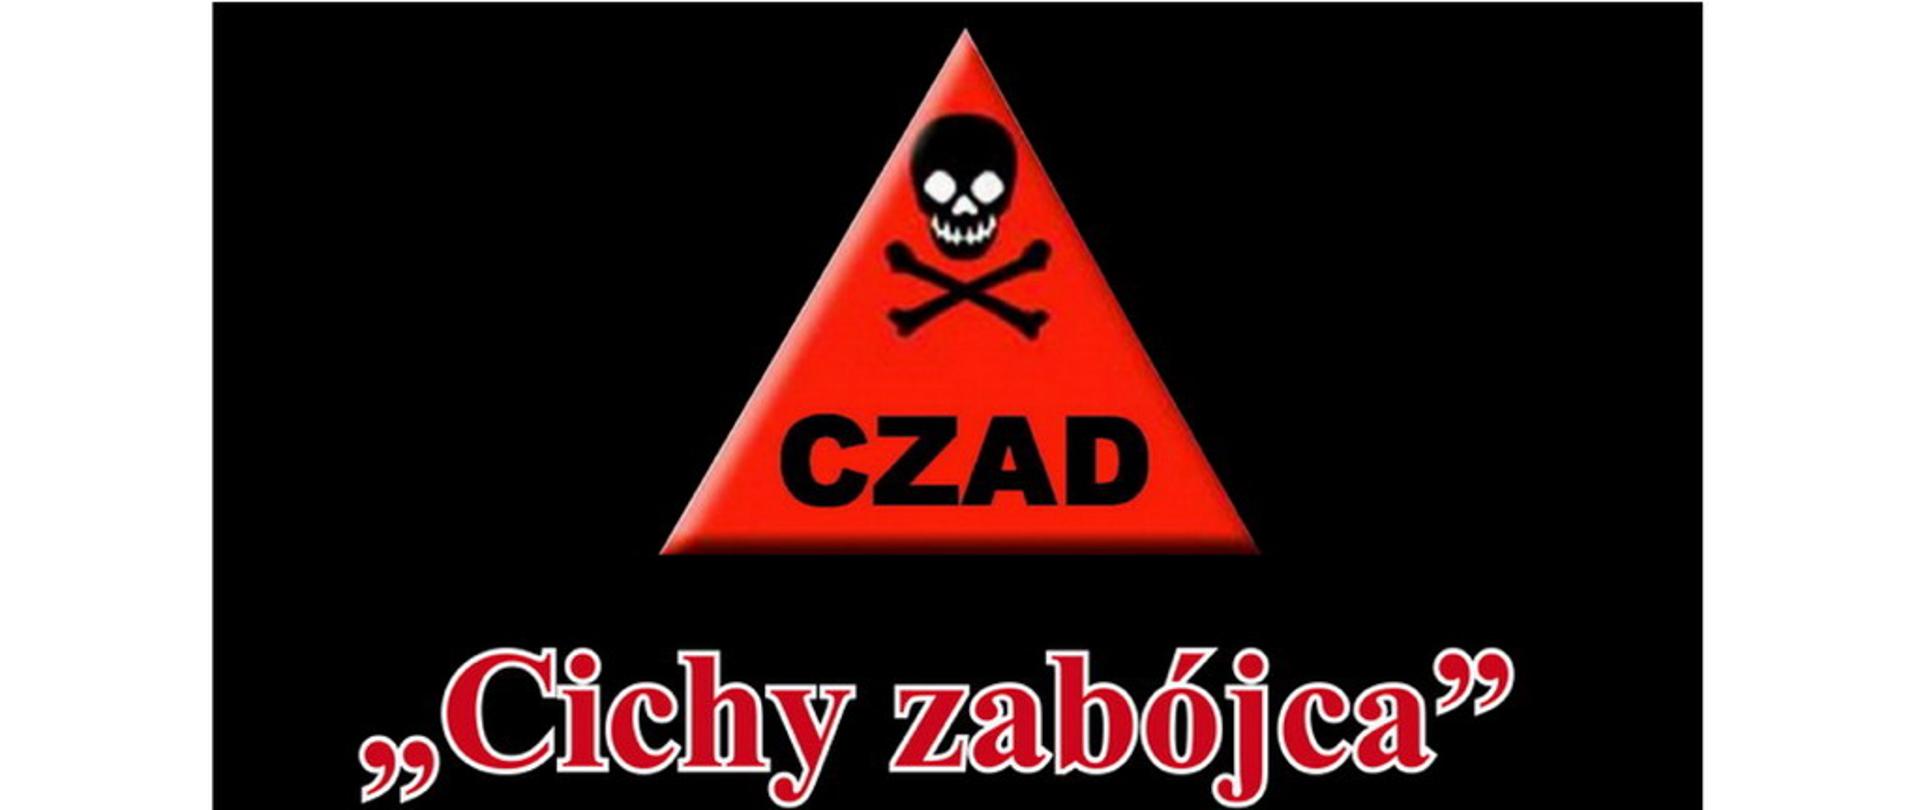 Logotyp przedstawiający czerwony trójkąt na czarnym tle wewnątrz trójkąta znajduje się znak niebezpieczeństwa czyli czaszka ze skrzyżowanymi piszczelami znak niebezpieczeństwa i napis czad pod trójkątem napis cichy zabójca